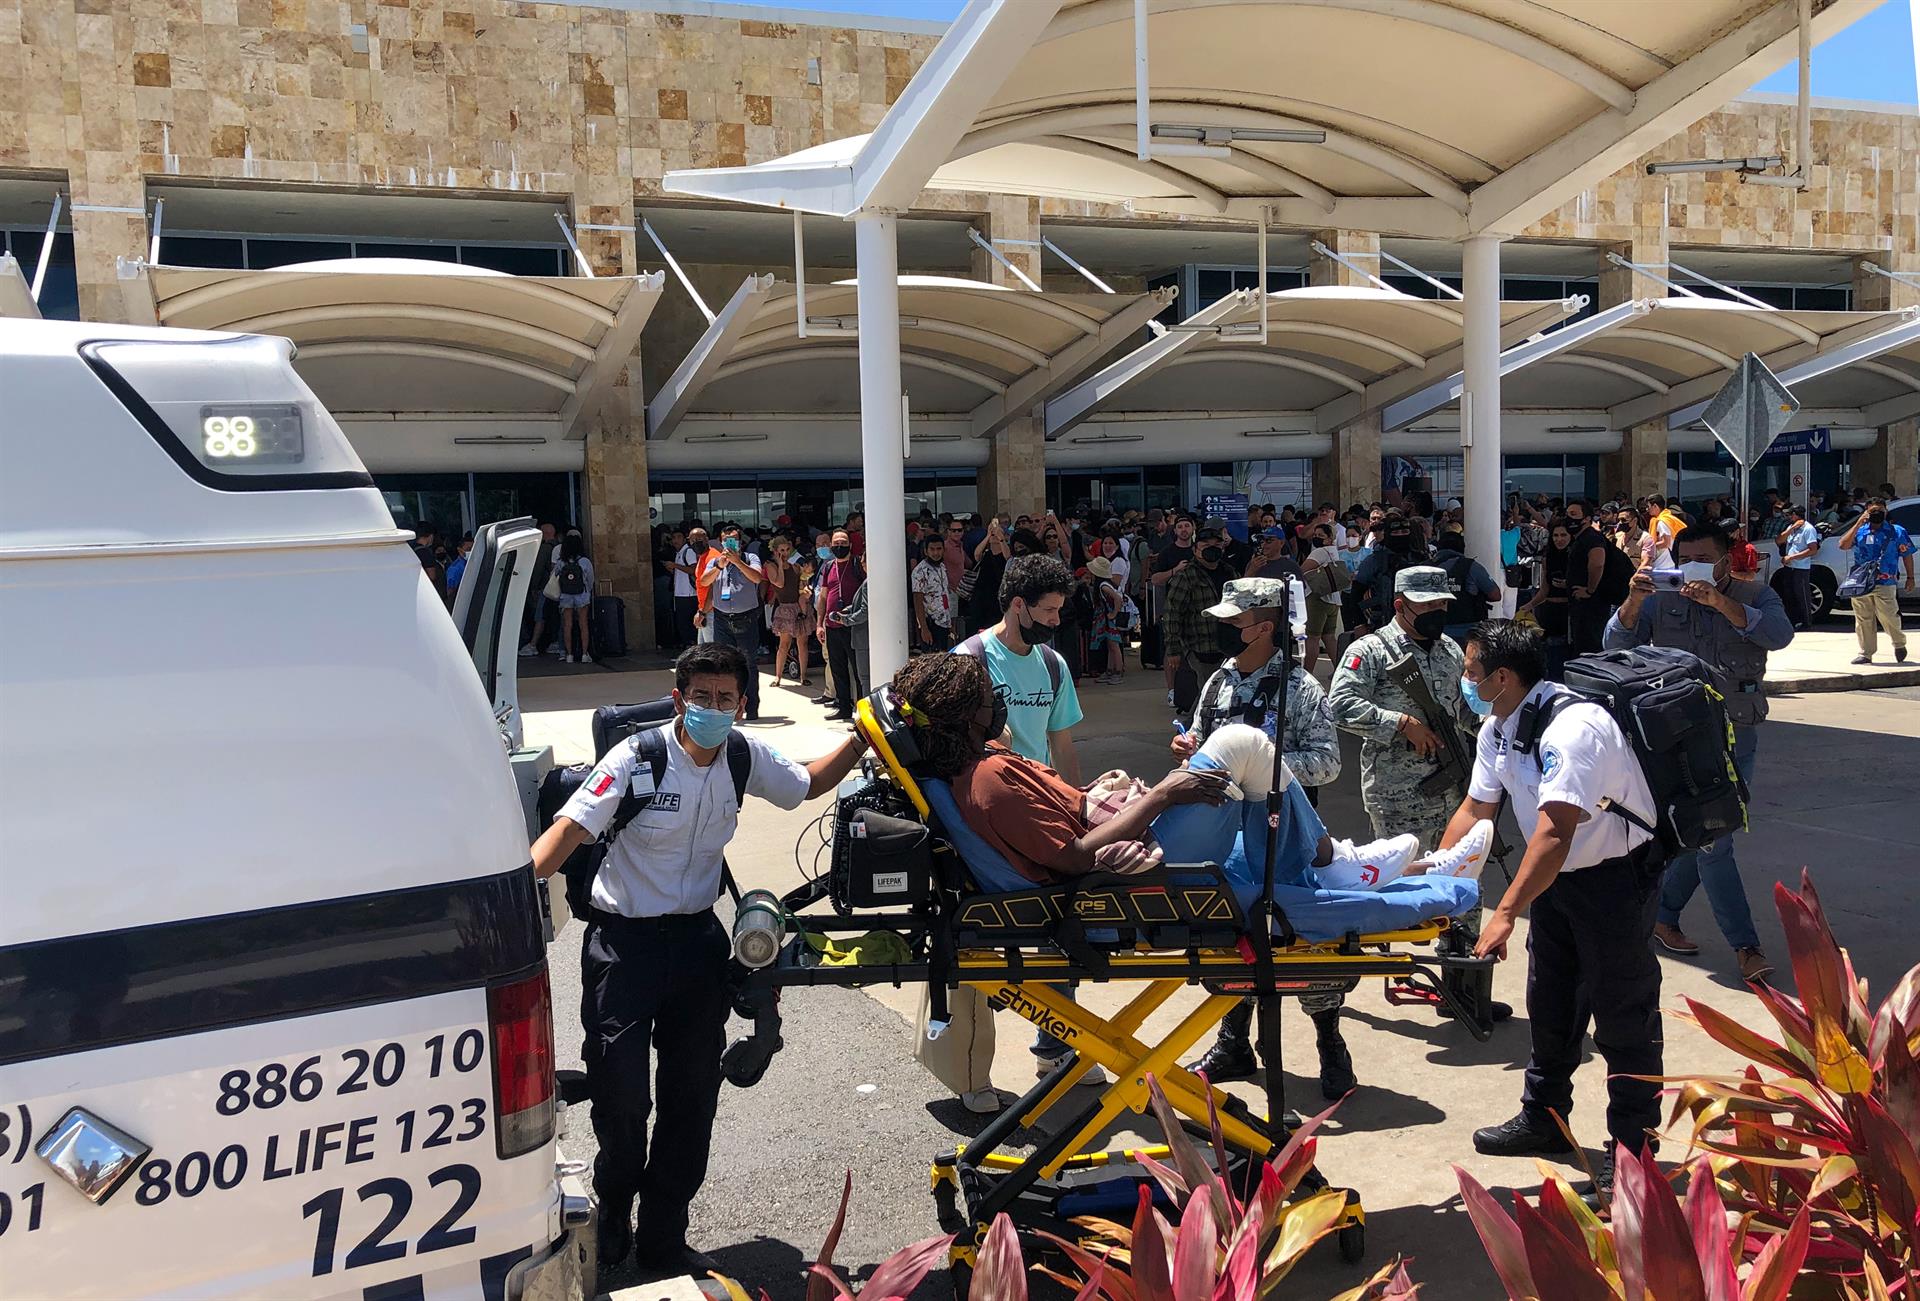 Caída de tres anuncios, derribados accidentalmente por turista, causa de alarma en aeropuerto de Cancún